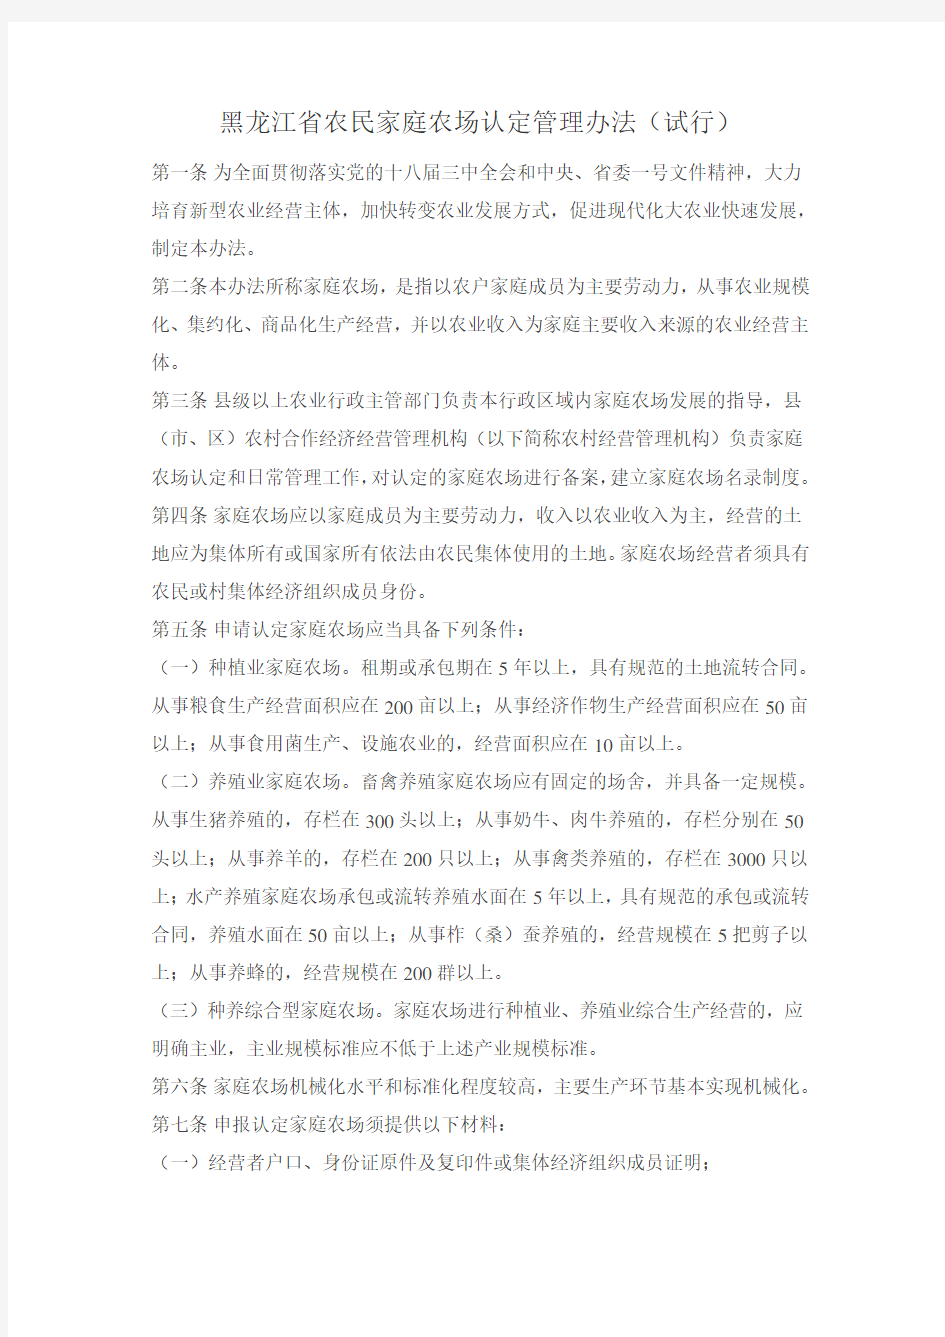 黑龙江省农民家庭农场认定管理办法